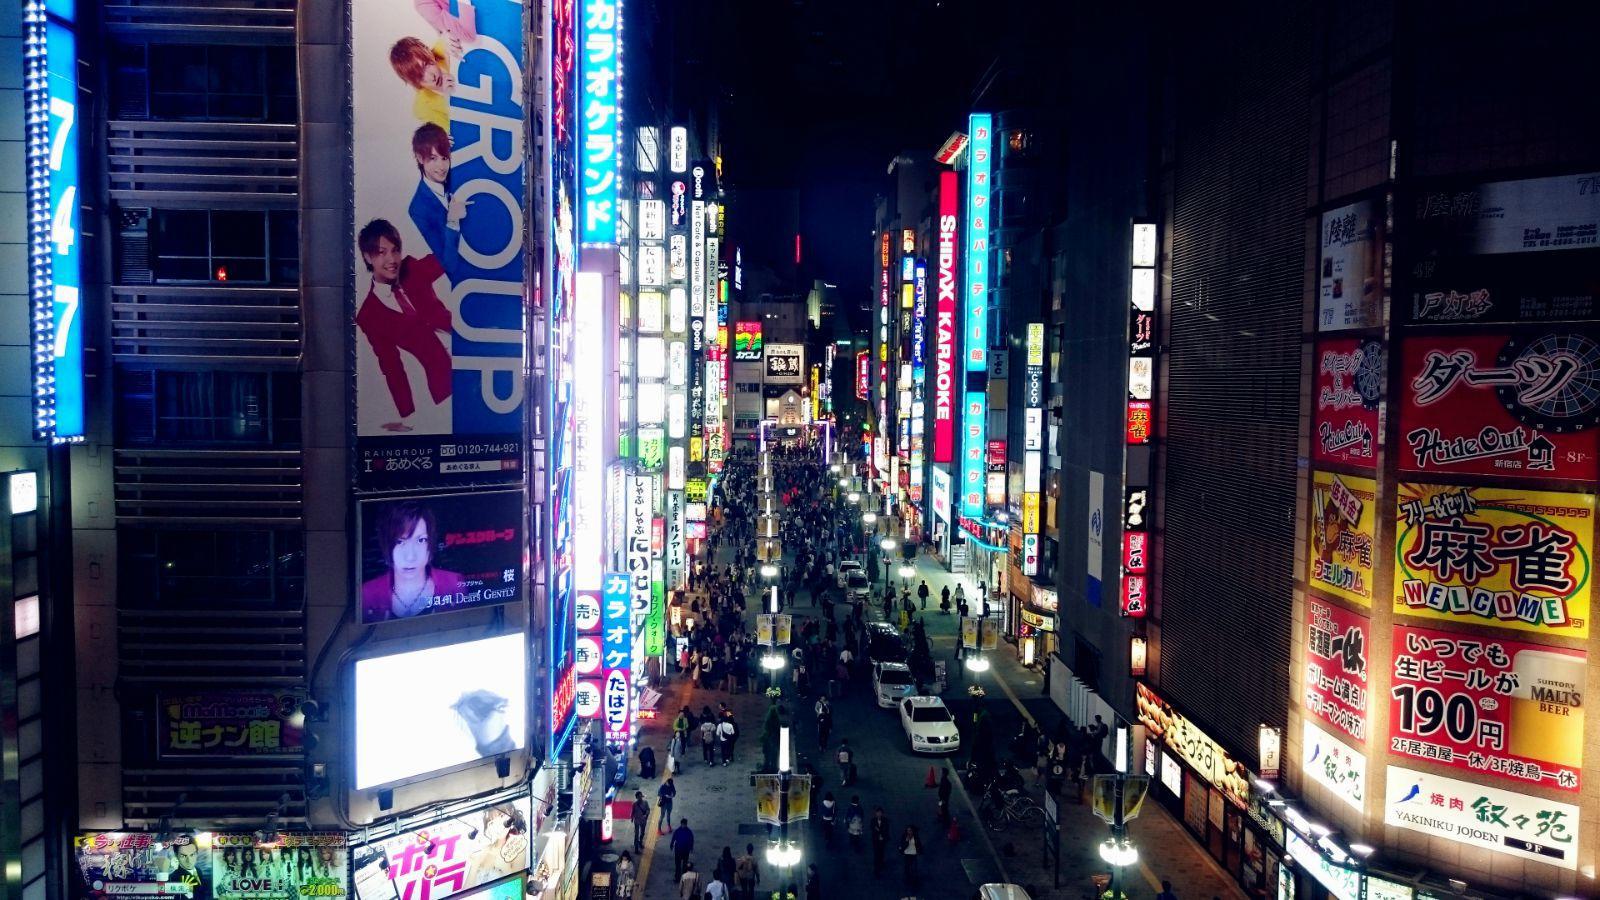 热闹额歌舞伎厅大街,看着如此夜景,想着即将结束此行,真是不舍离开.